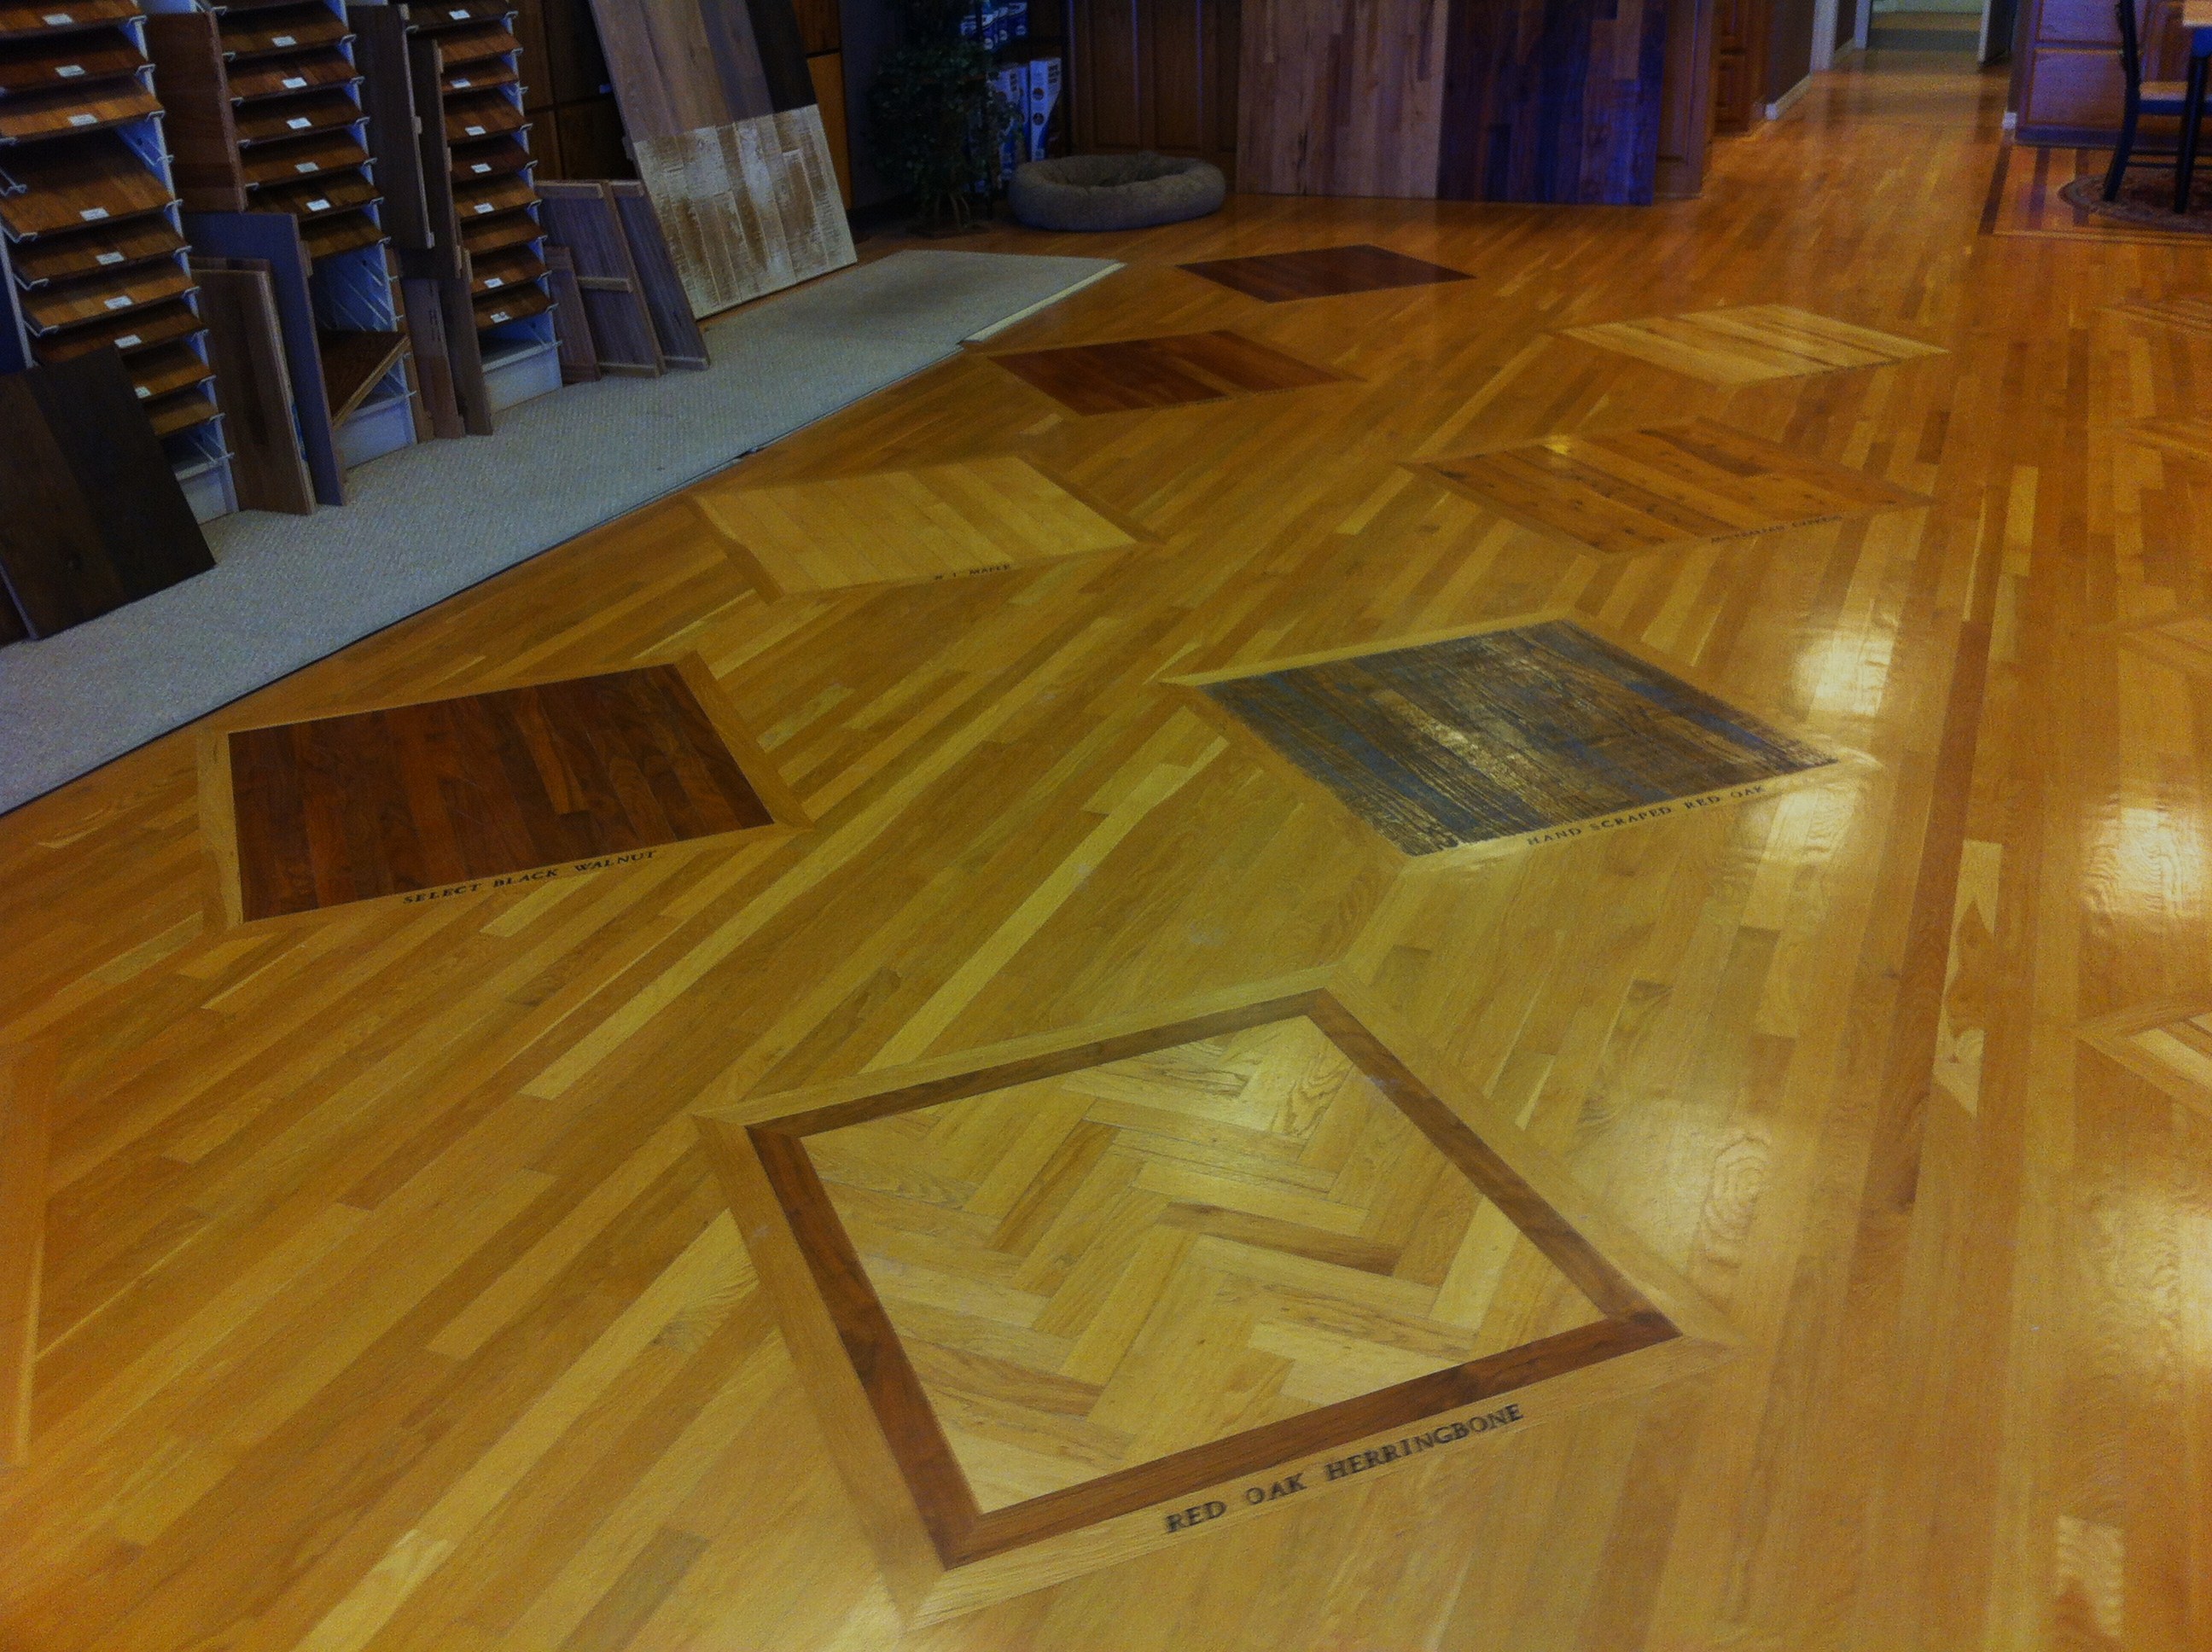 Wood Inlay | The Wood Floor Gallery, Inc. Showroom